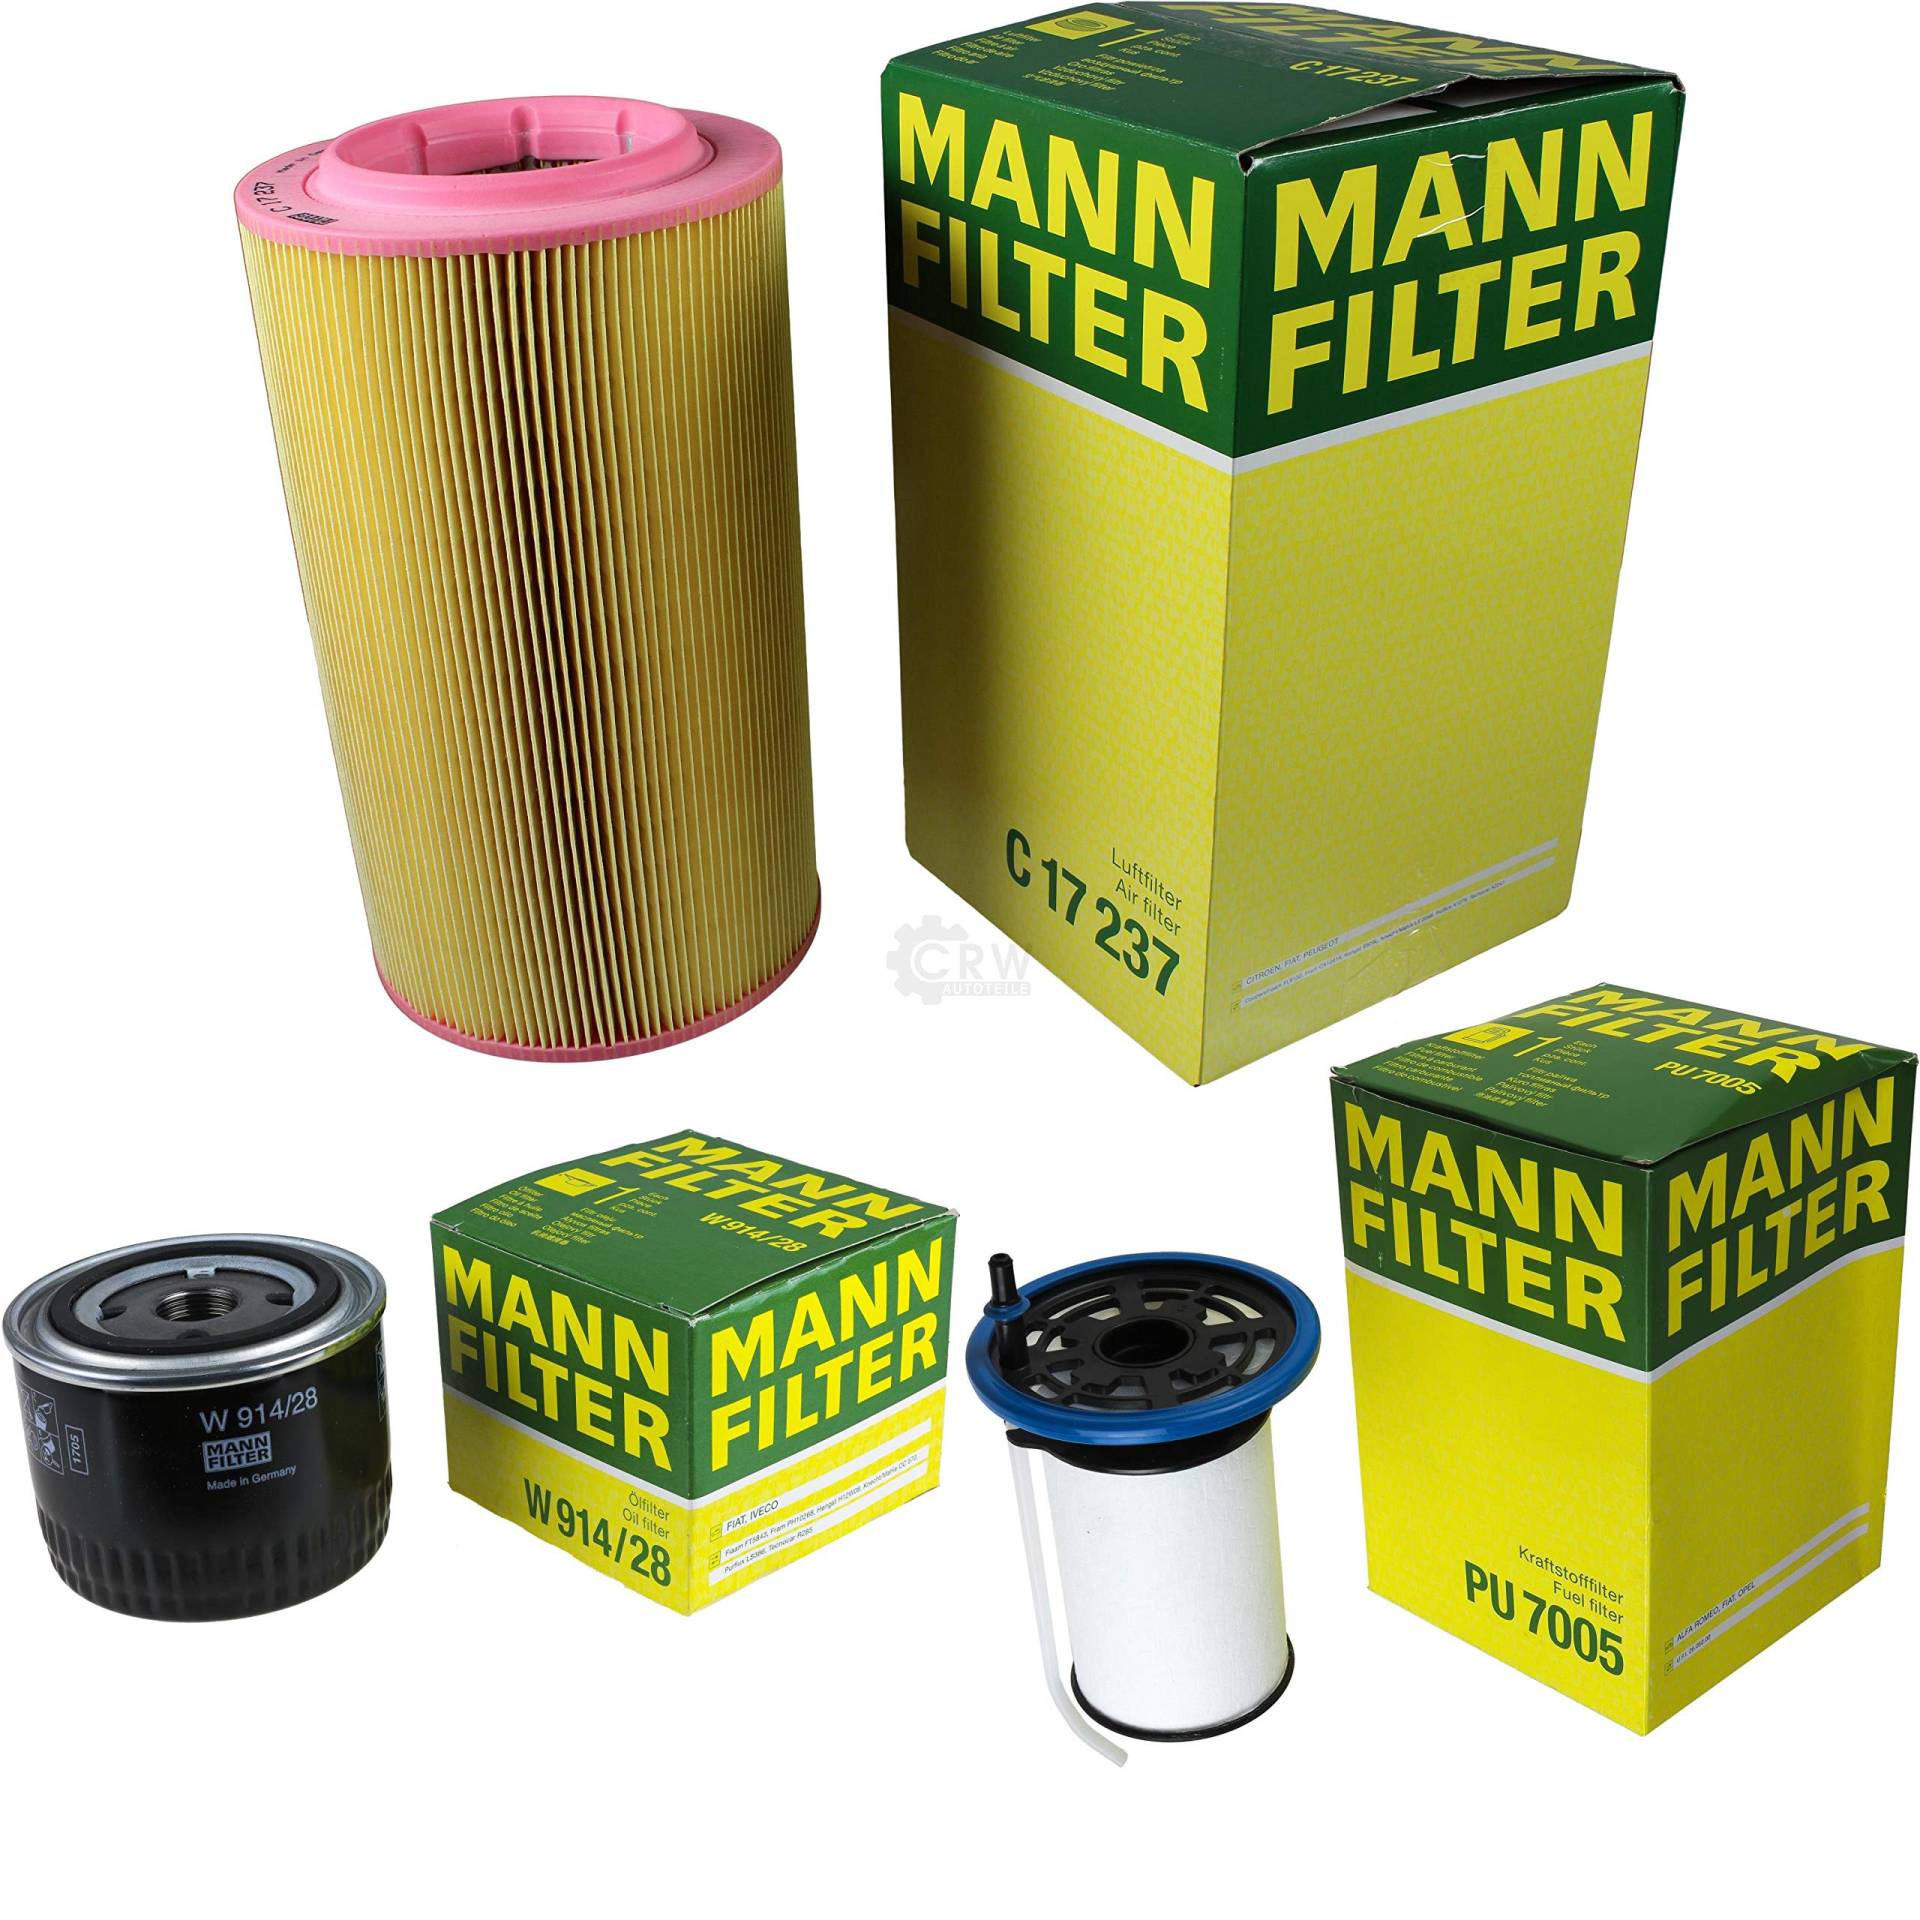 MANN-FILTER Inspektions Set Inspektionspaket Luftfilter Ölfilter Kraftstofffilter von Diederichs